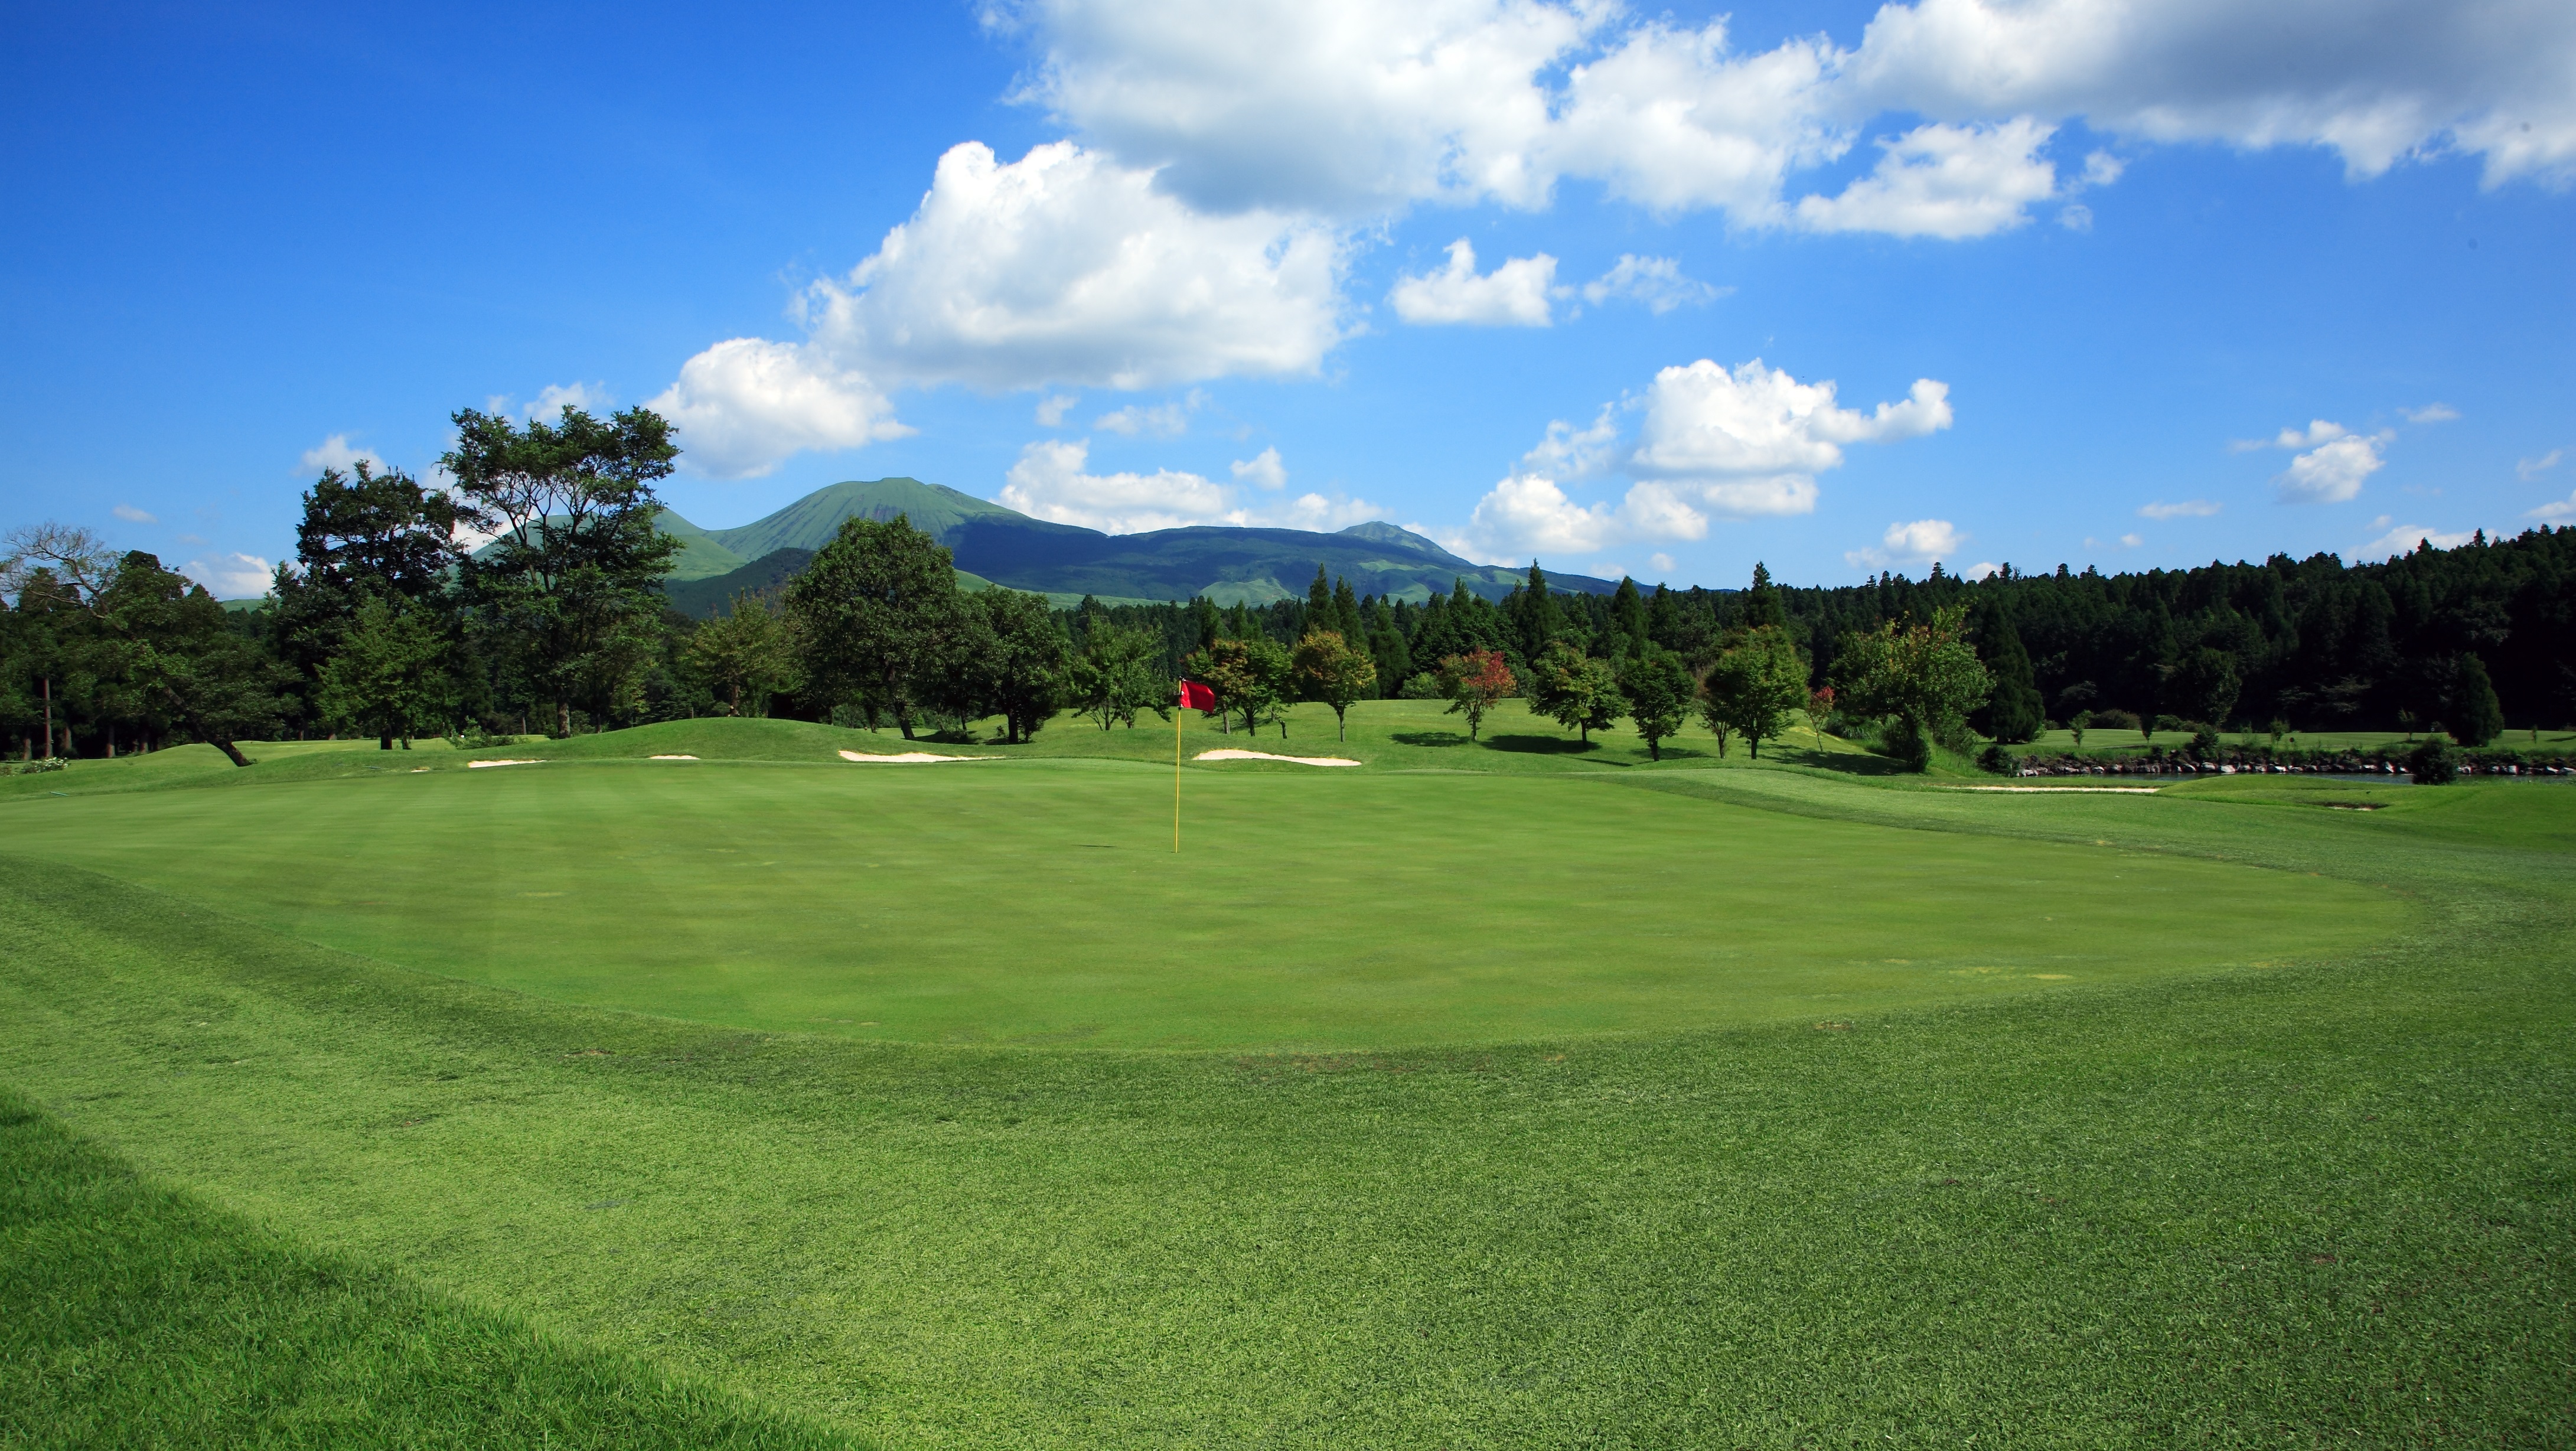 ＜ゴルフ場＞阿蘇外輪山を眺めながらのゴルフをお楽しみください